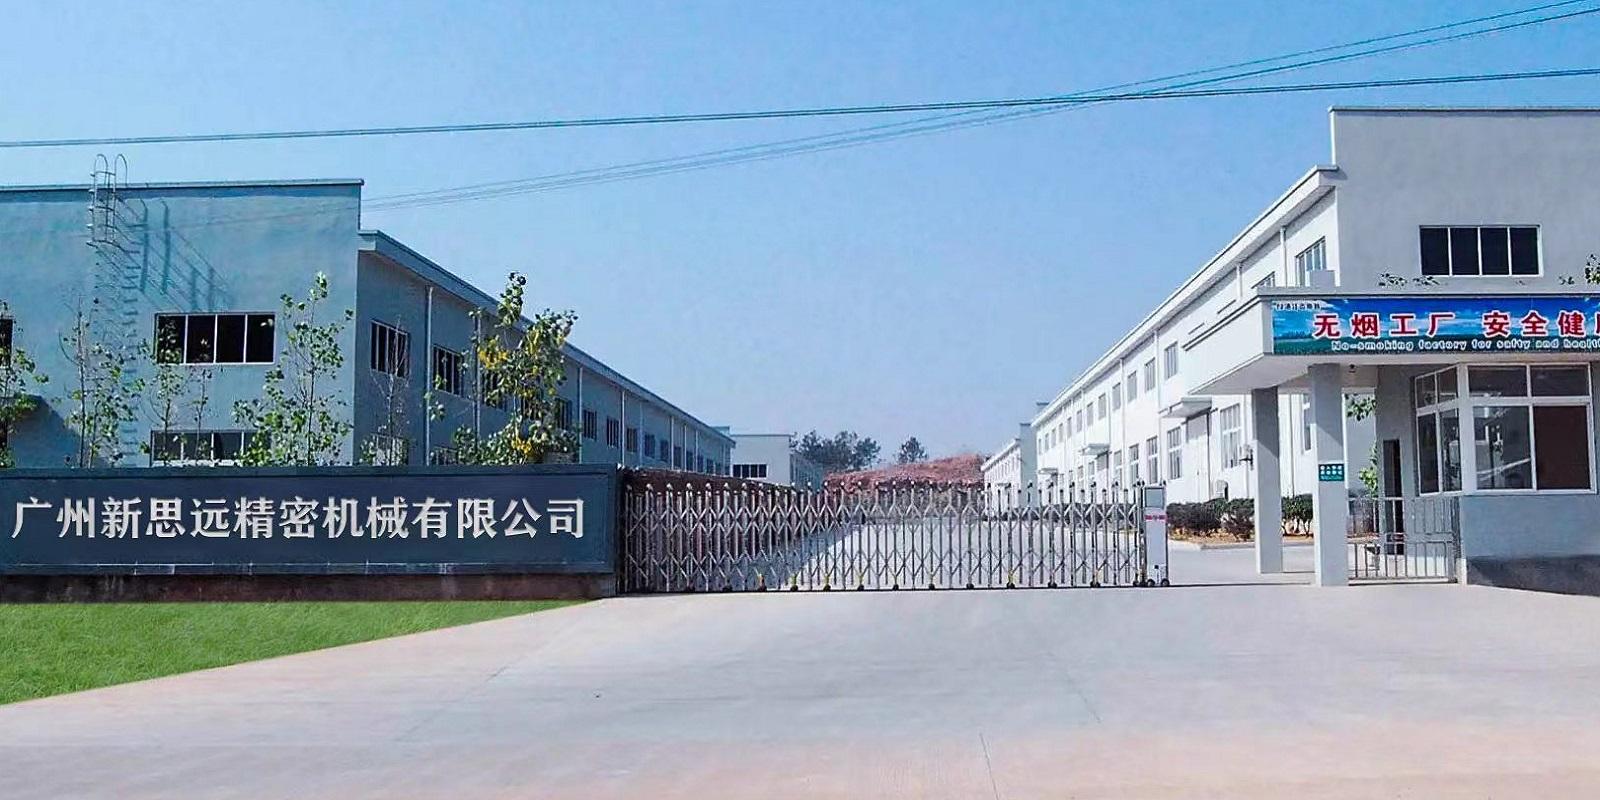  Guangzhou Panyu Xinsiyuan Metal Processing Machinery Factory